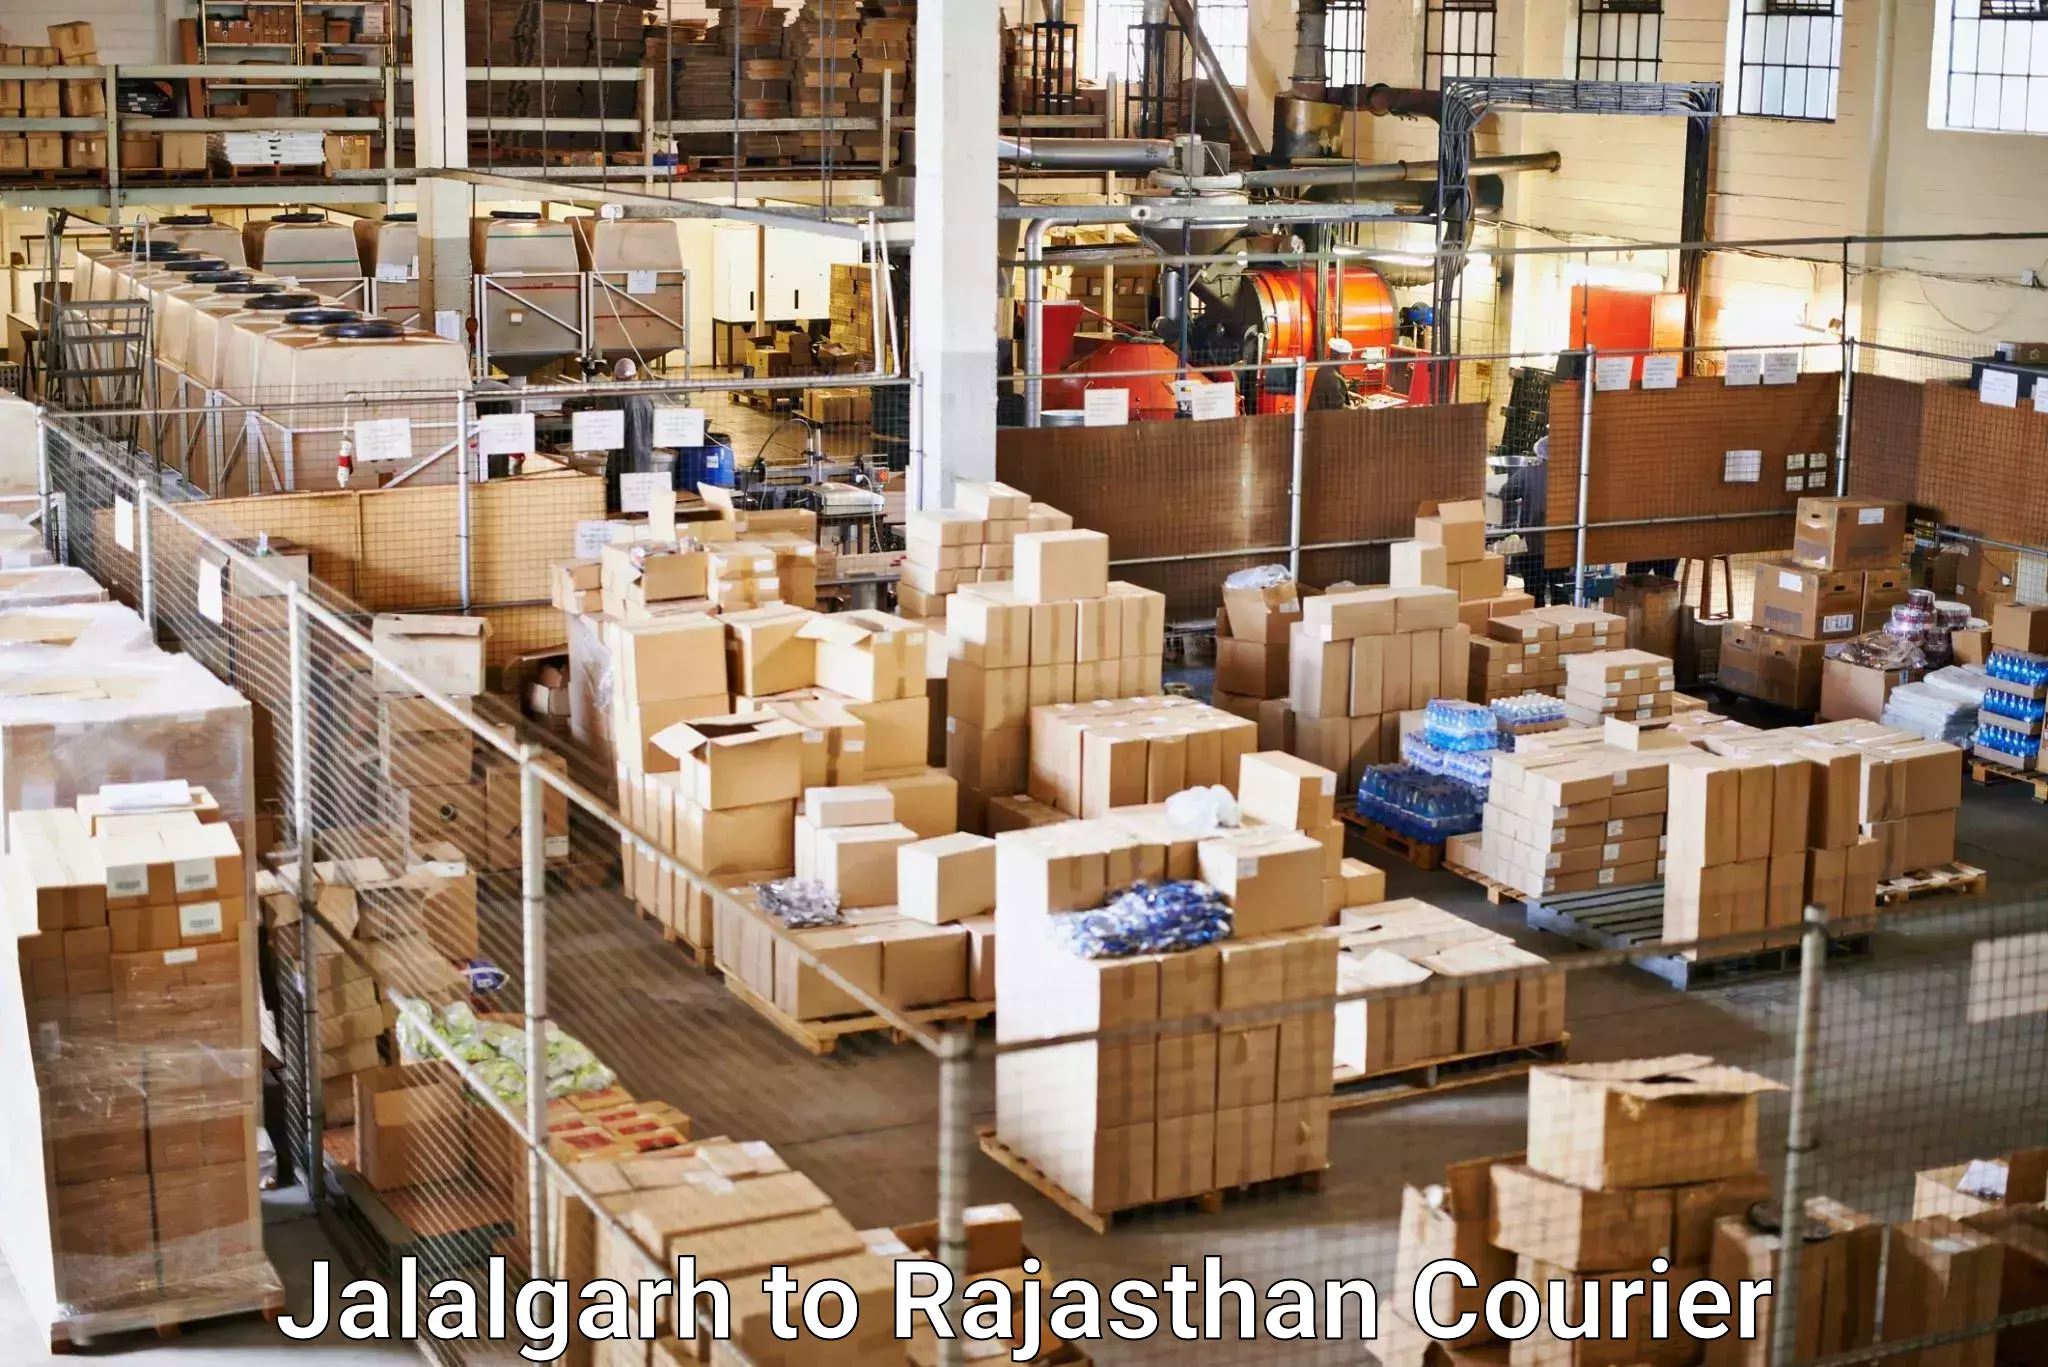 User-friendly delivery service Jalalgarh to Jayal